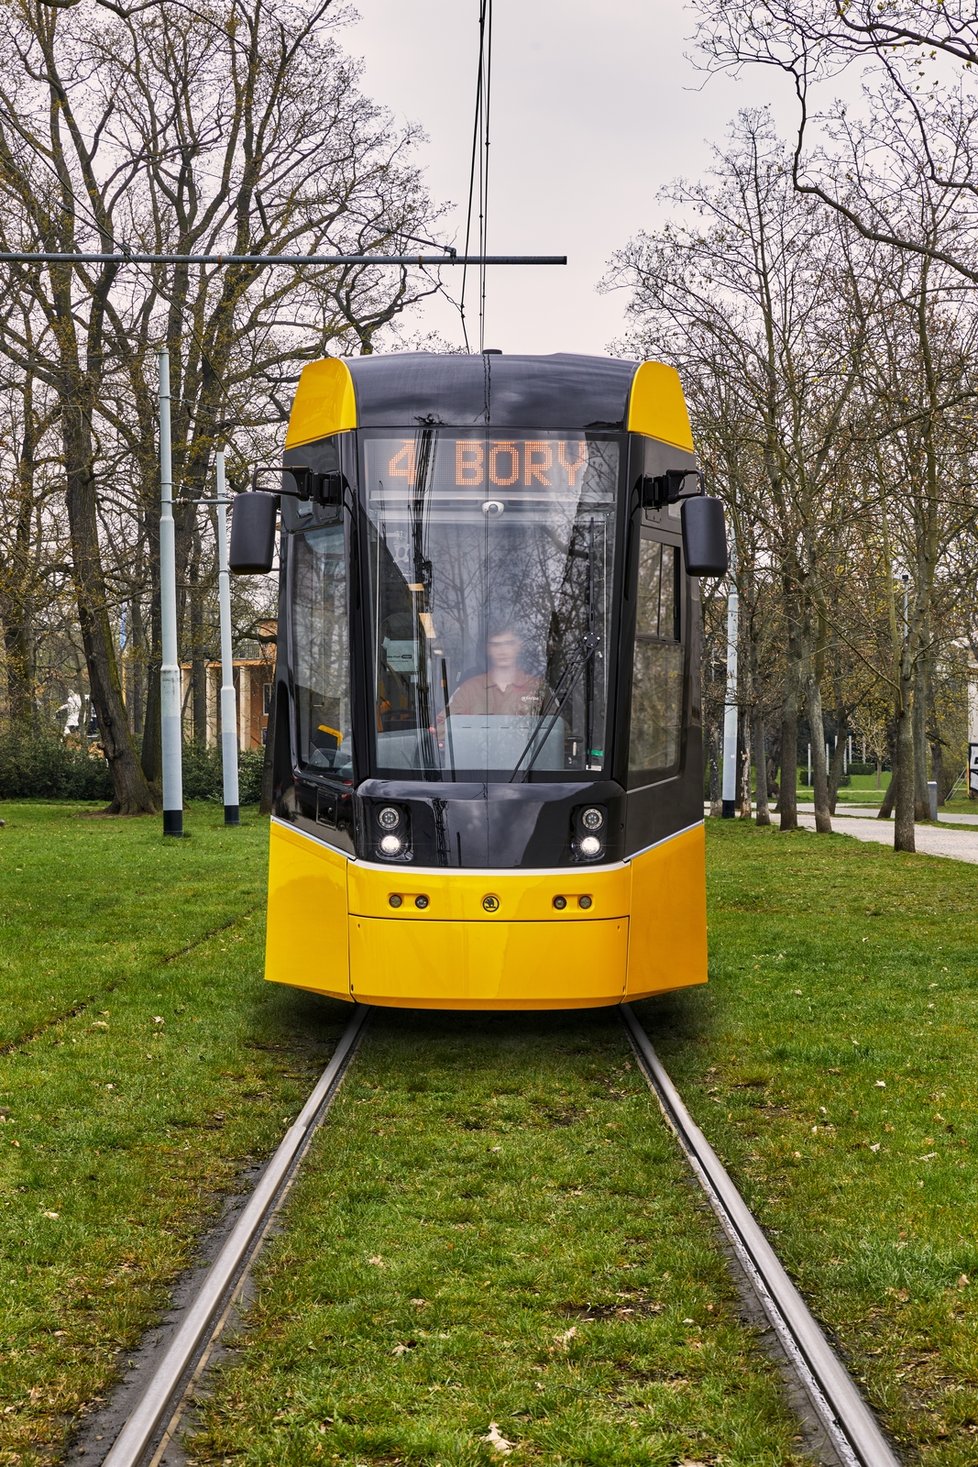 Tahhle nová tramvaj Škoda Forcity Smart 40T bude jezdit v Plzni. Město si jich zatím objednalo dvanáct.